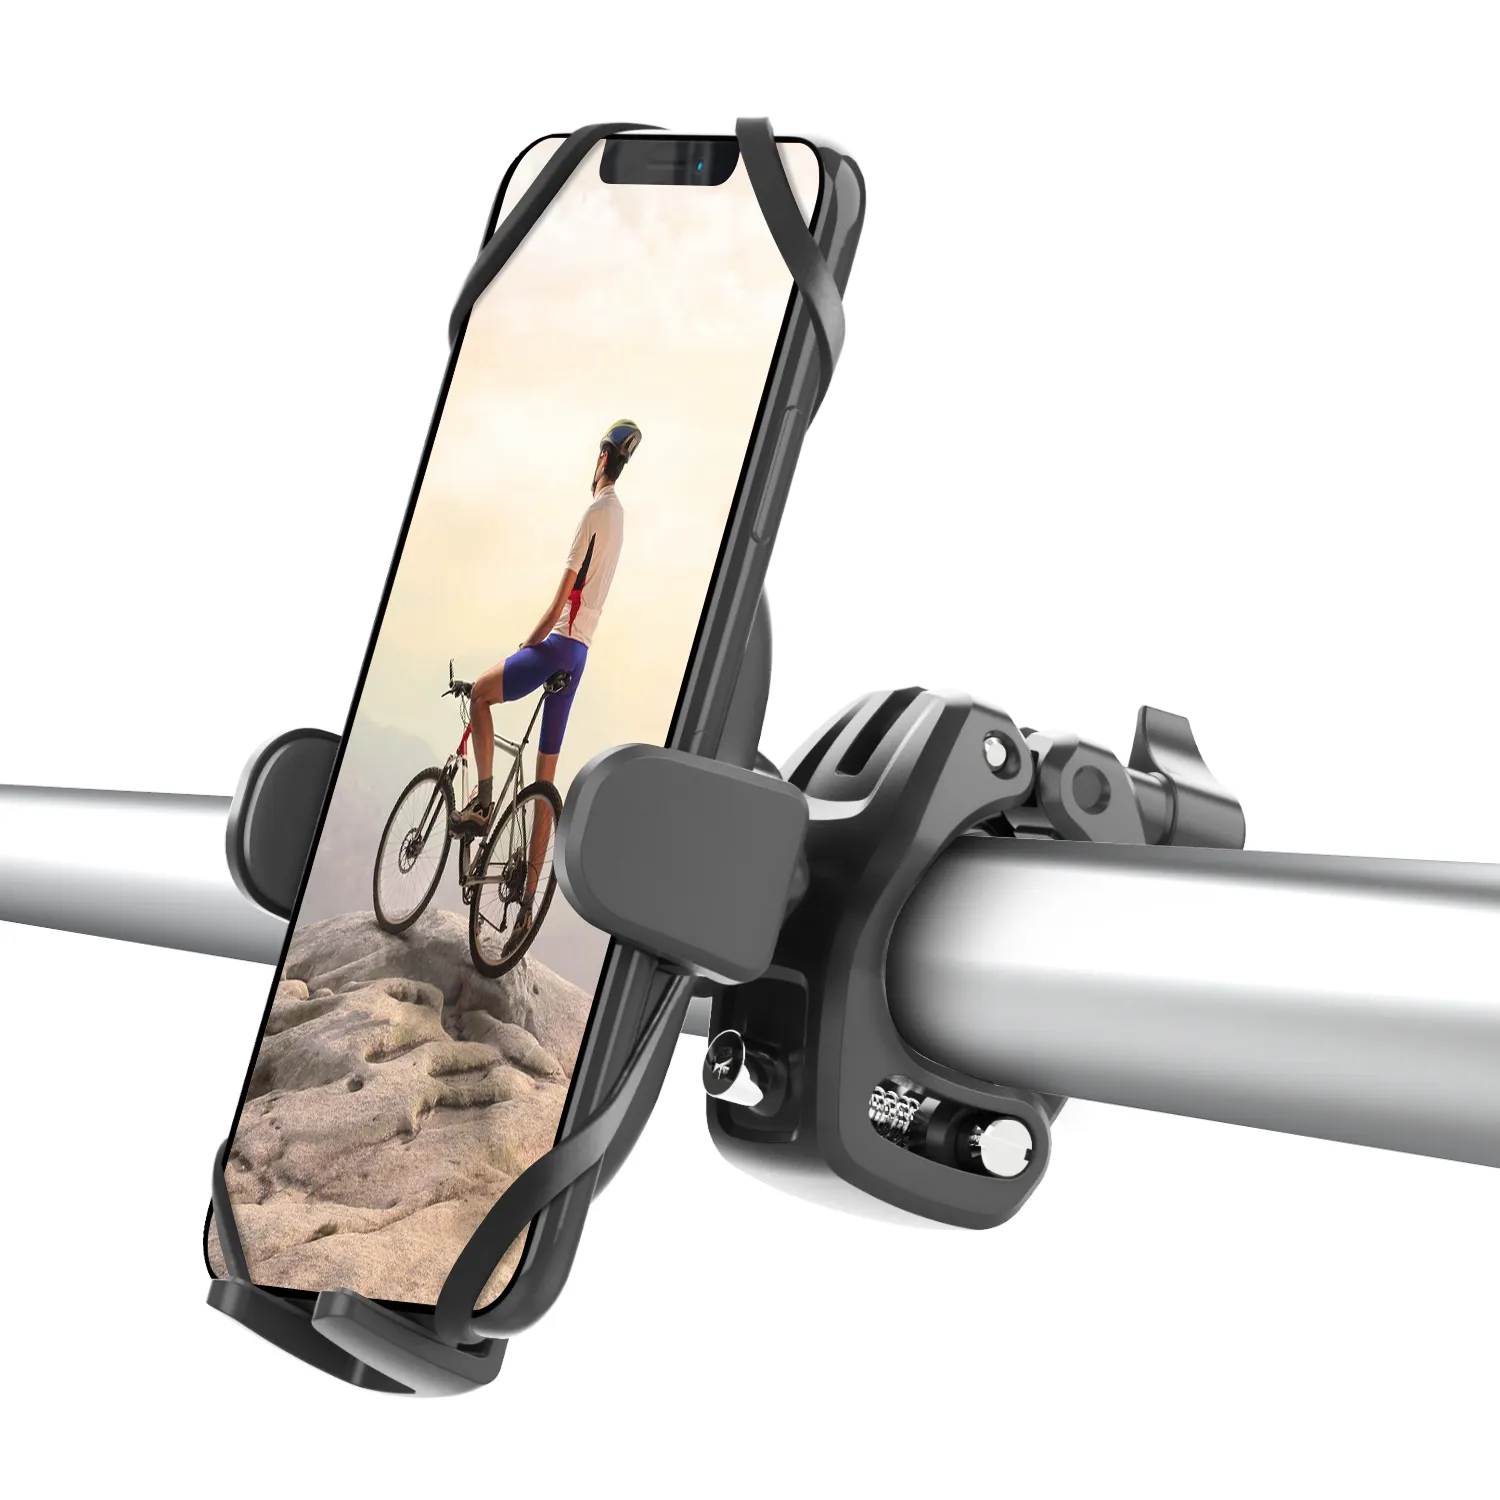 APPS2Car Magnet Spider Mobile Phone Holder For Bike